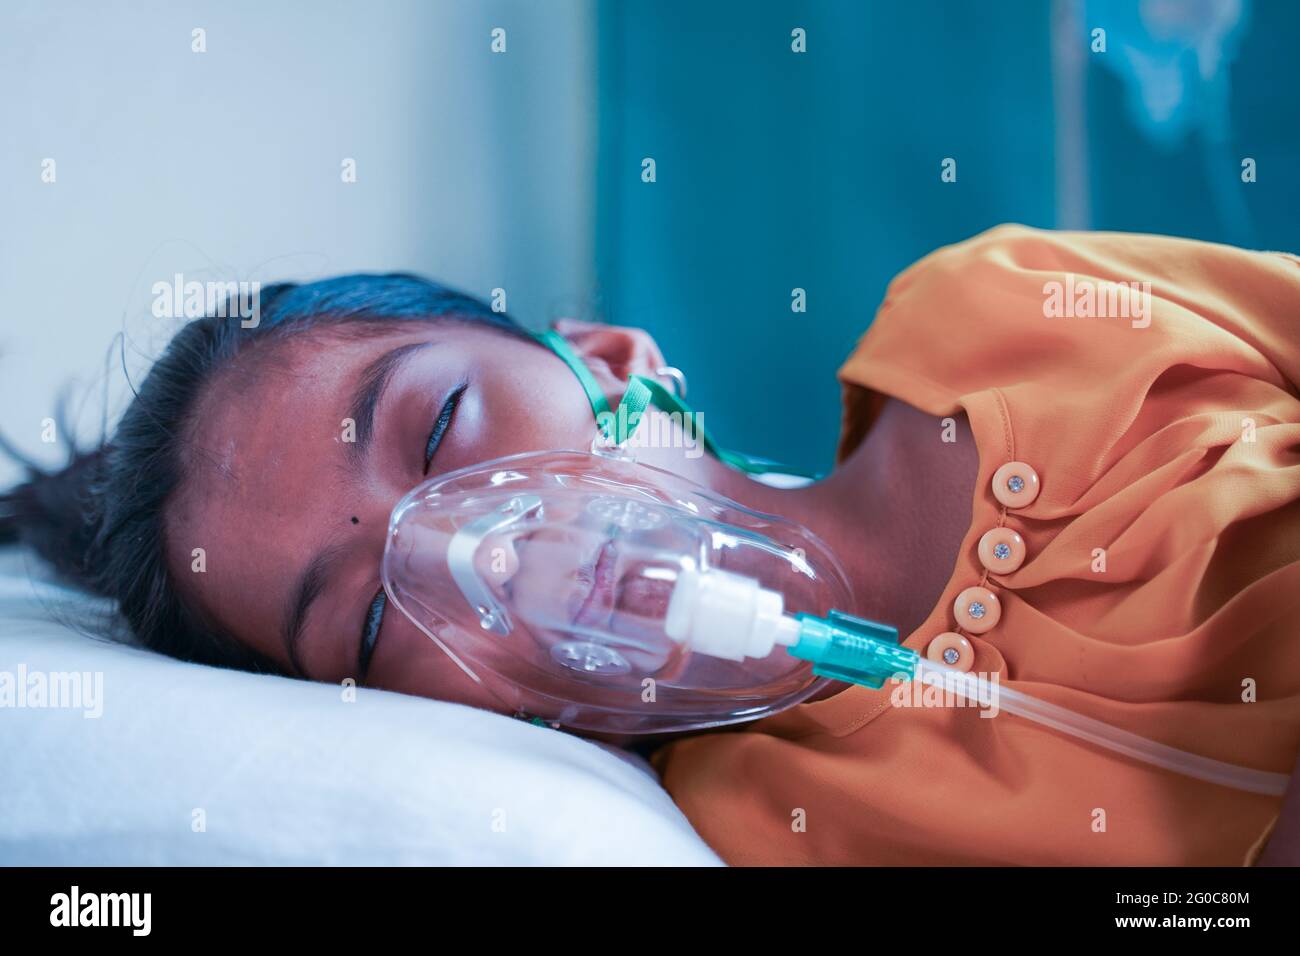 Little Girl Kid atmet auf Ventilator Sauerstoffmaske aufgrund von Coronavirus covid-19 Atemnot oder Dyspnoe-Infektion - Konzept der Kinder Stockfoto